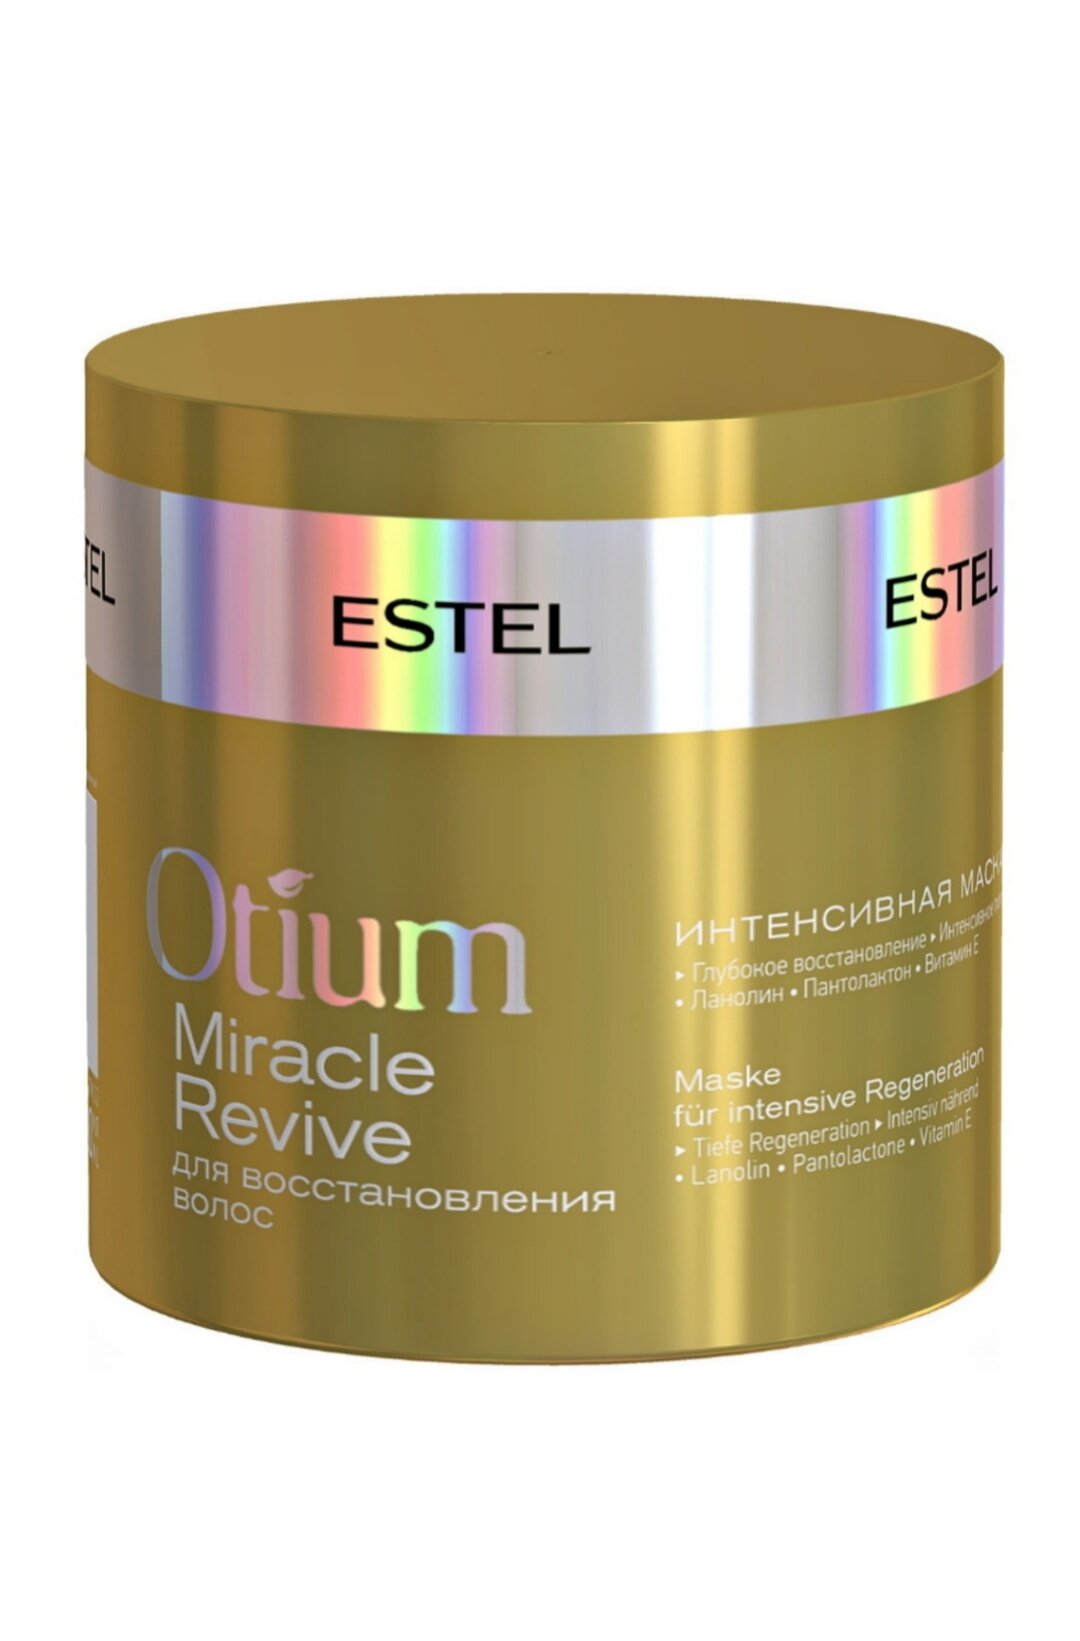 ESTEL PROFESSIONAL Маска OTIUM MIRACLE REVIVE для восстановления волос интенсивная 300 мл